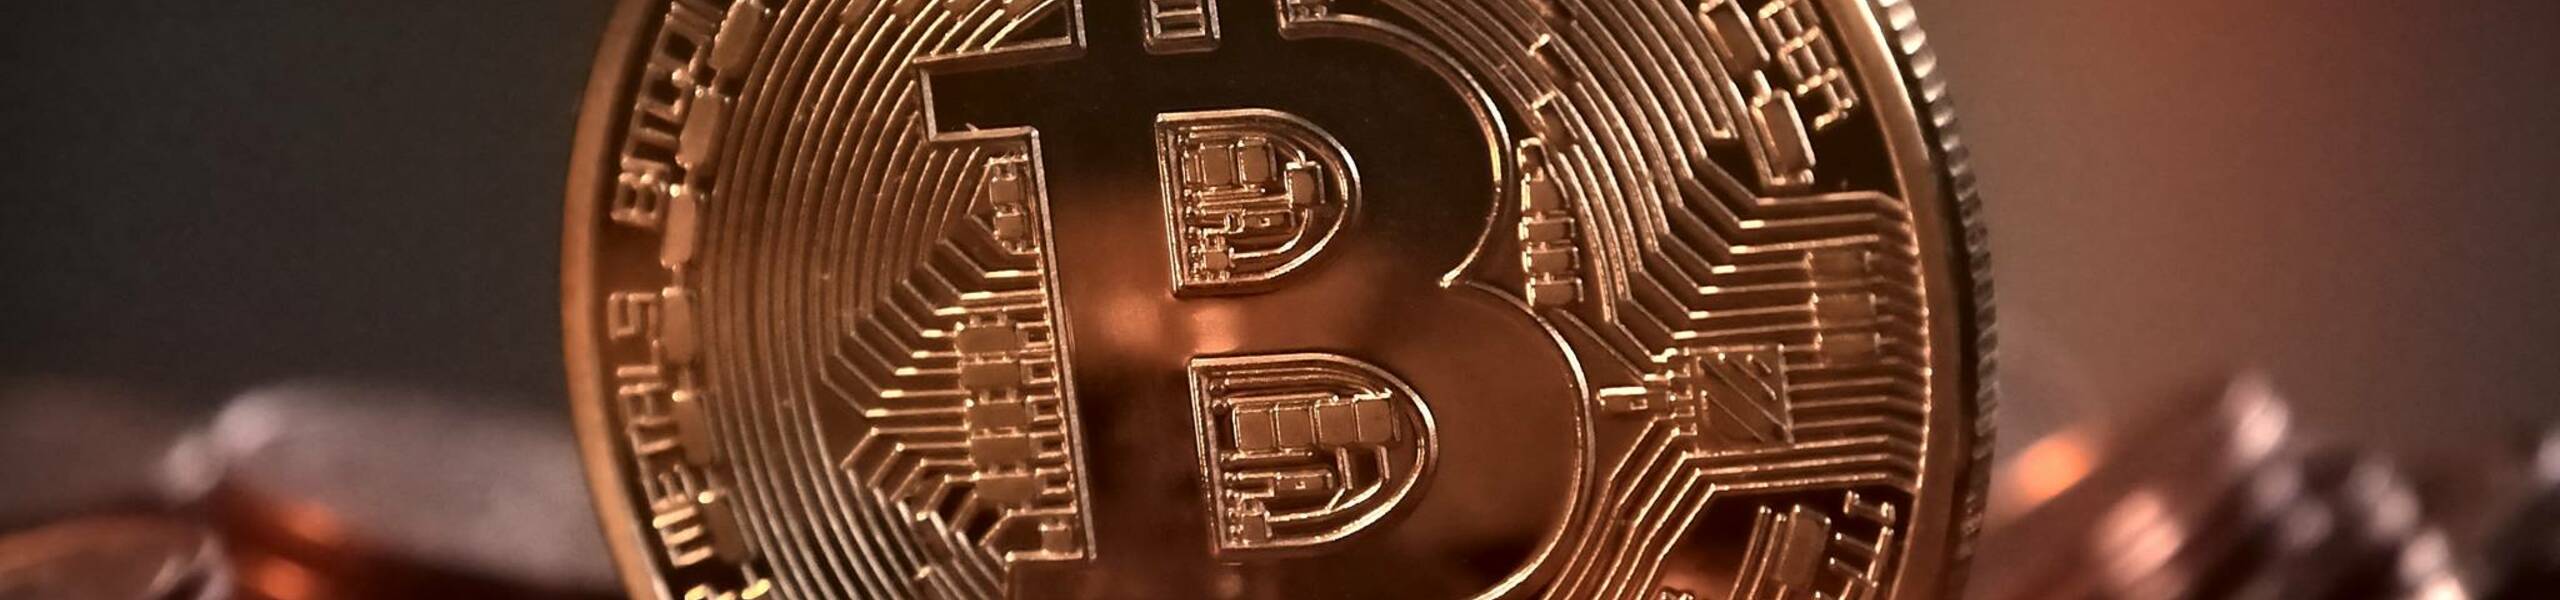 Bitcoin menguji rintangan kecil - Analisis - 27-07-2017